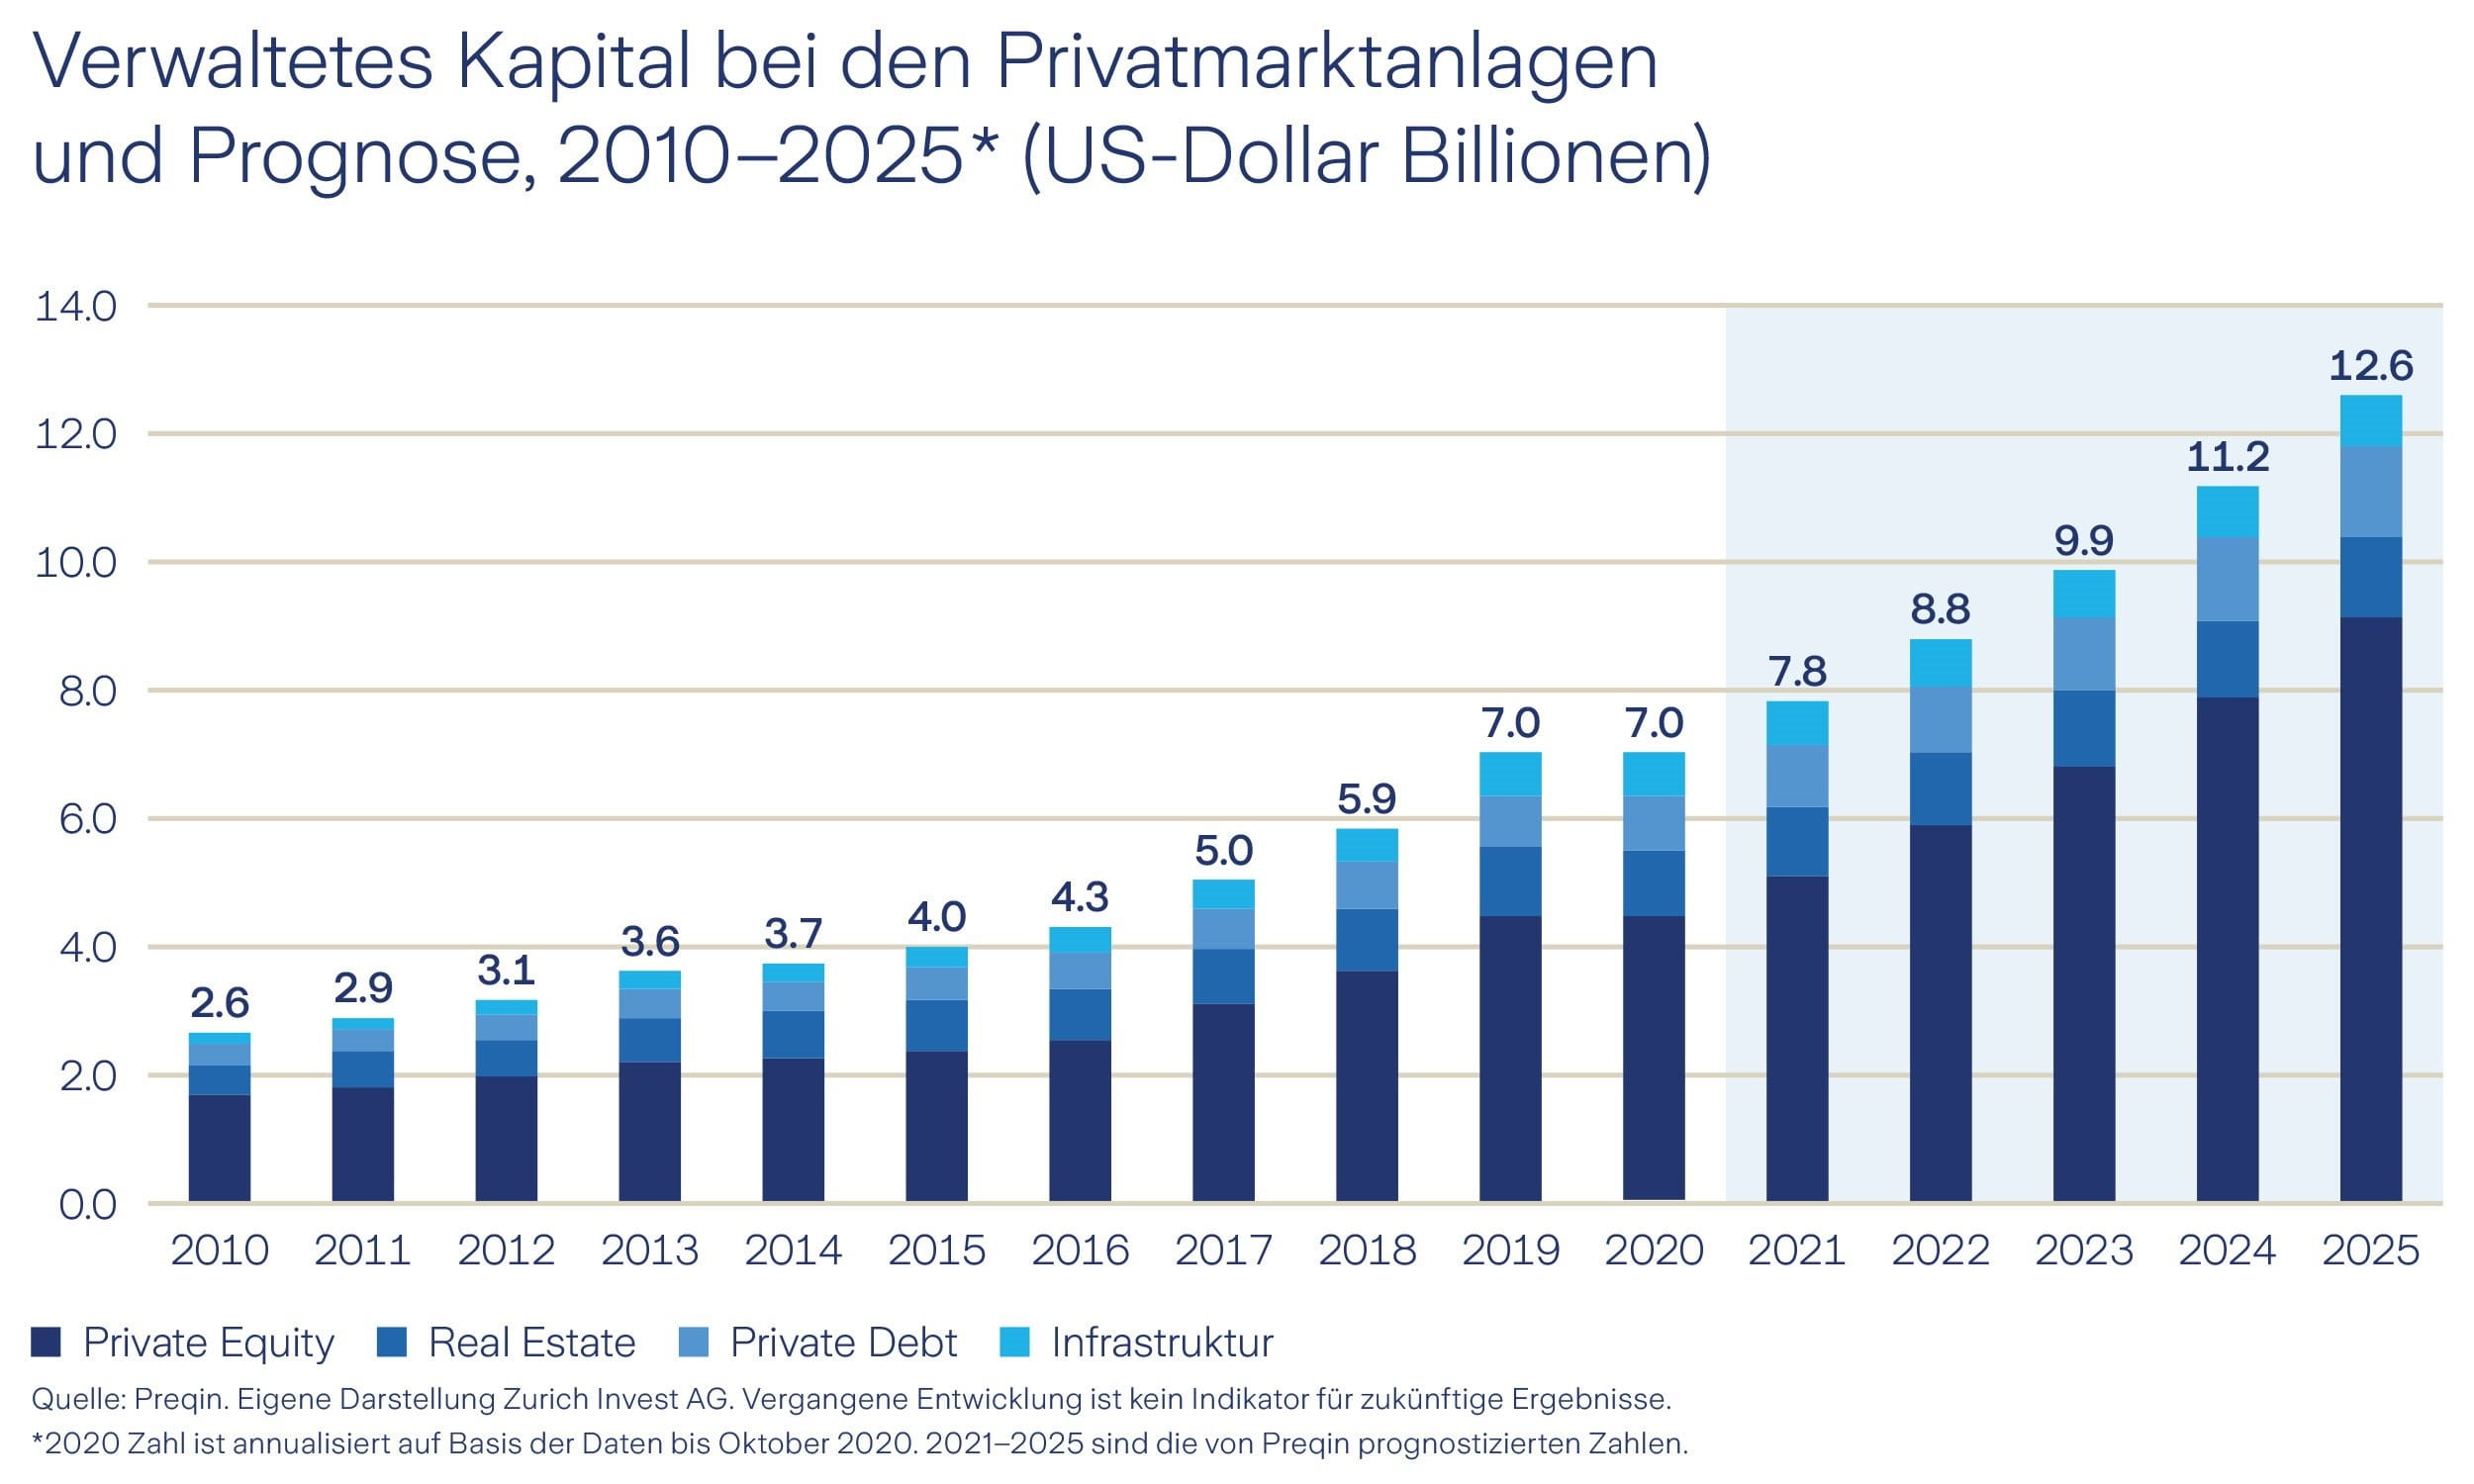 Grafik verwaltetes Kapital bei Privatmarktanlagen und Prognose 2010-2025